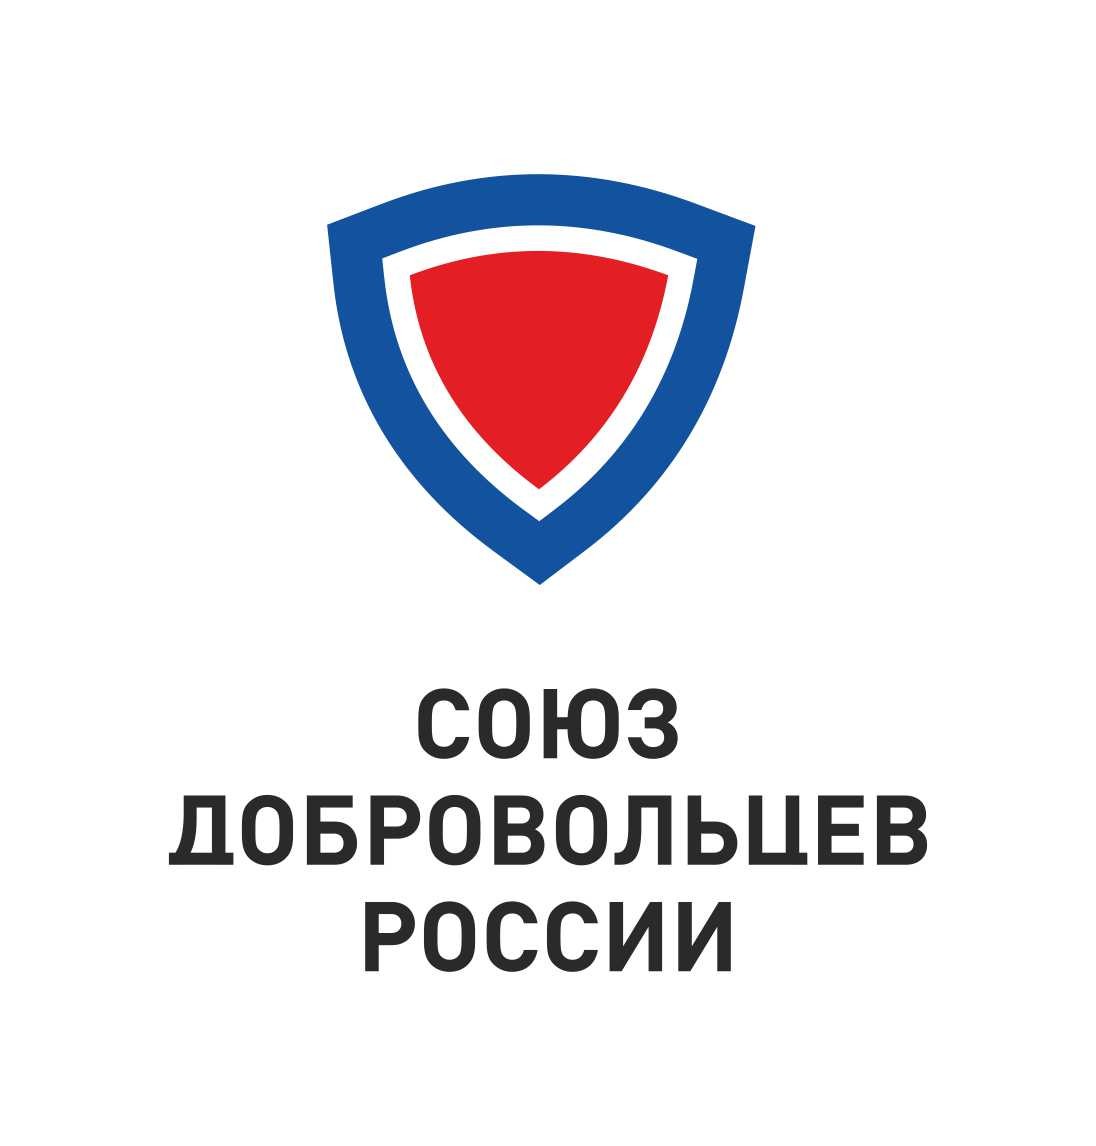 Забайкальское отделение Союза добровольцев России